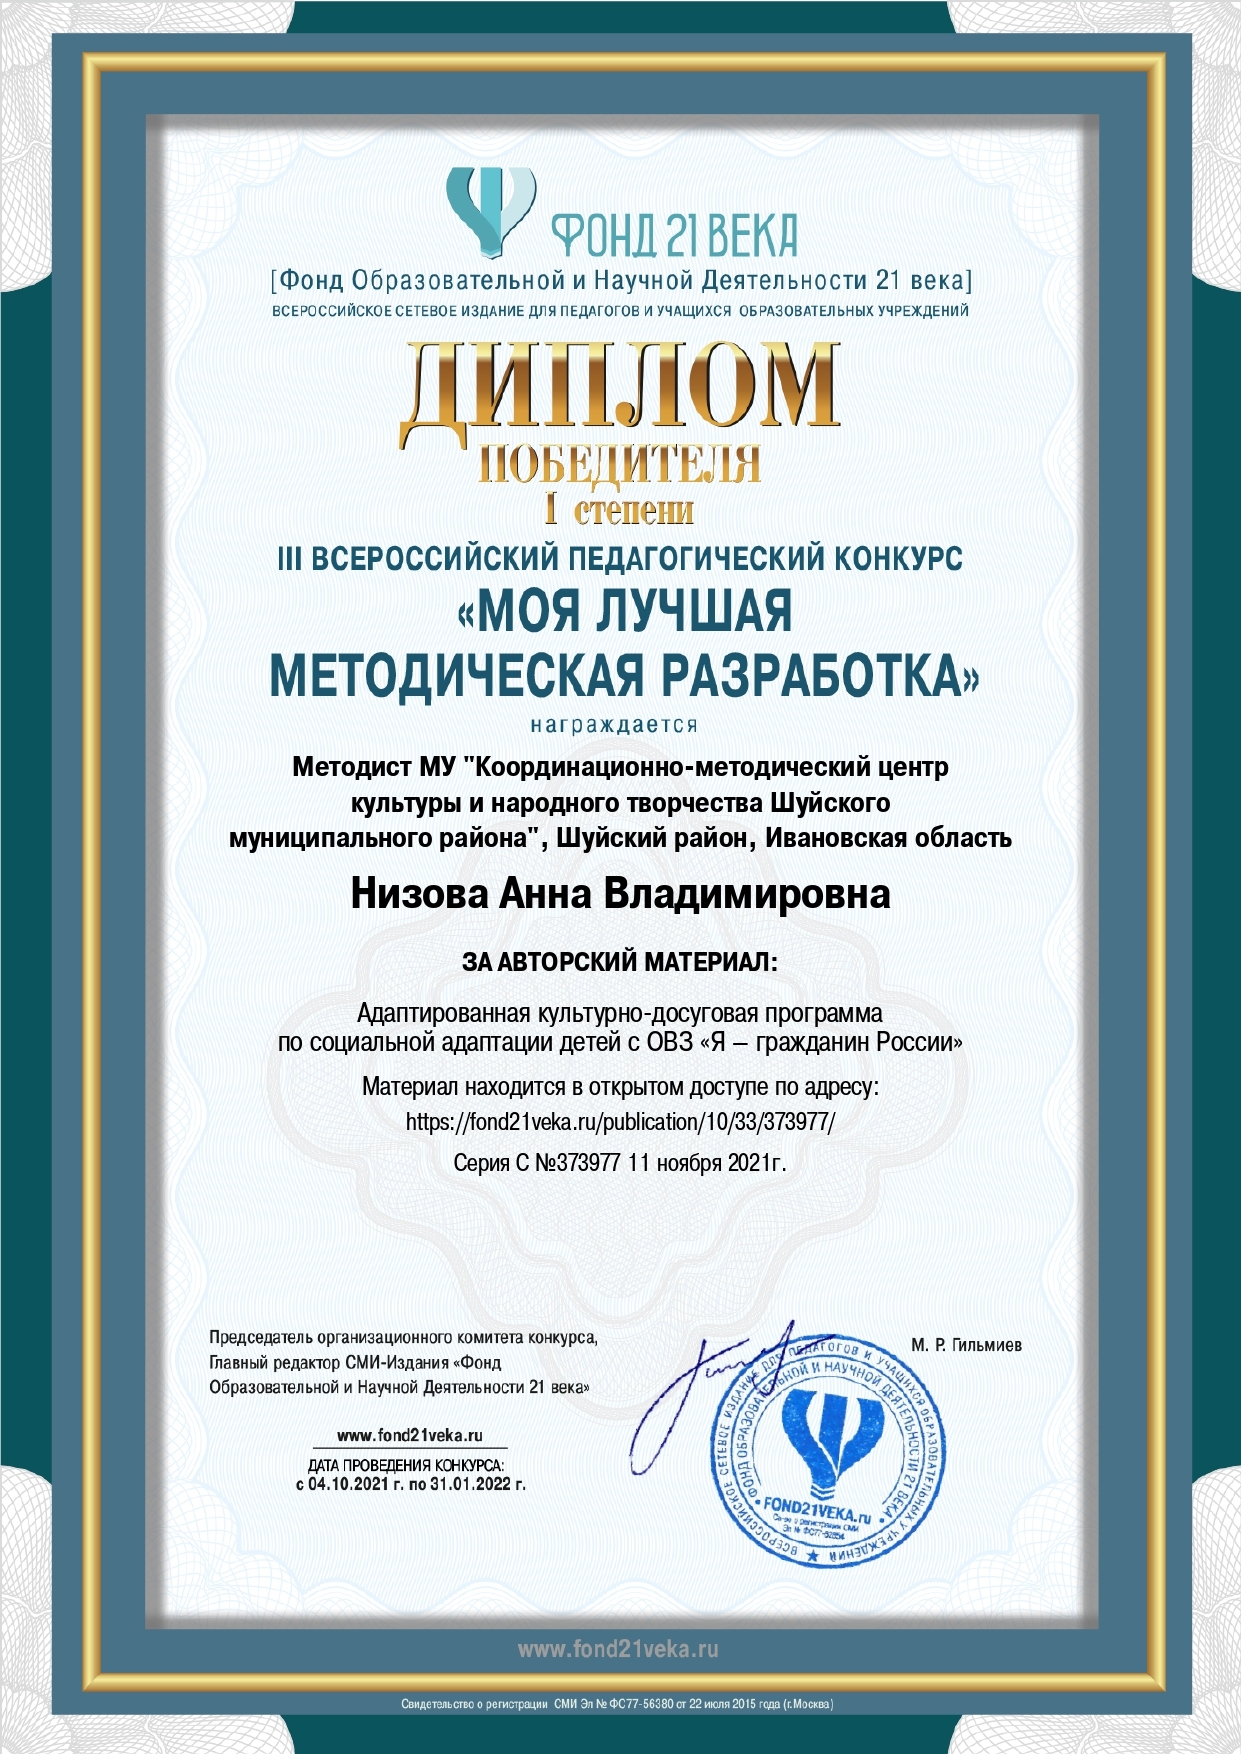 Победа на III Всероссийском педагогическом конкурсе «Моя лучшая методическая разработка»